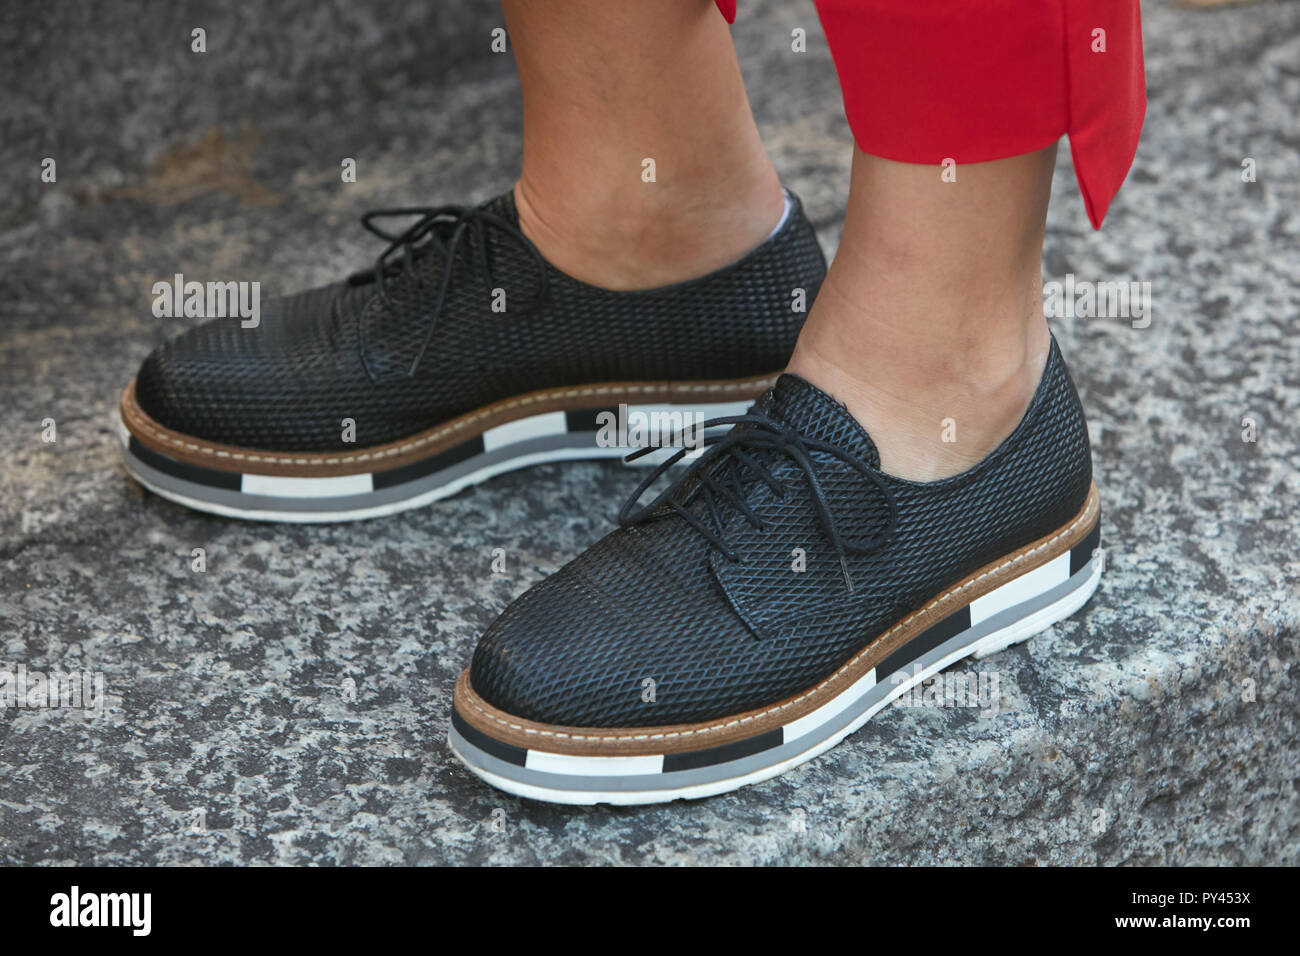 Milán, Italia - 23 de septiembre de 2018: Mujer con zapatos negros con  suela en blanco y